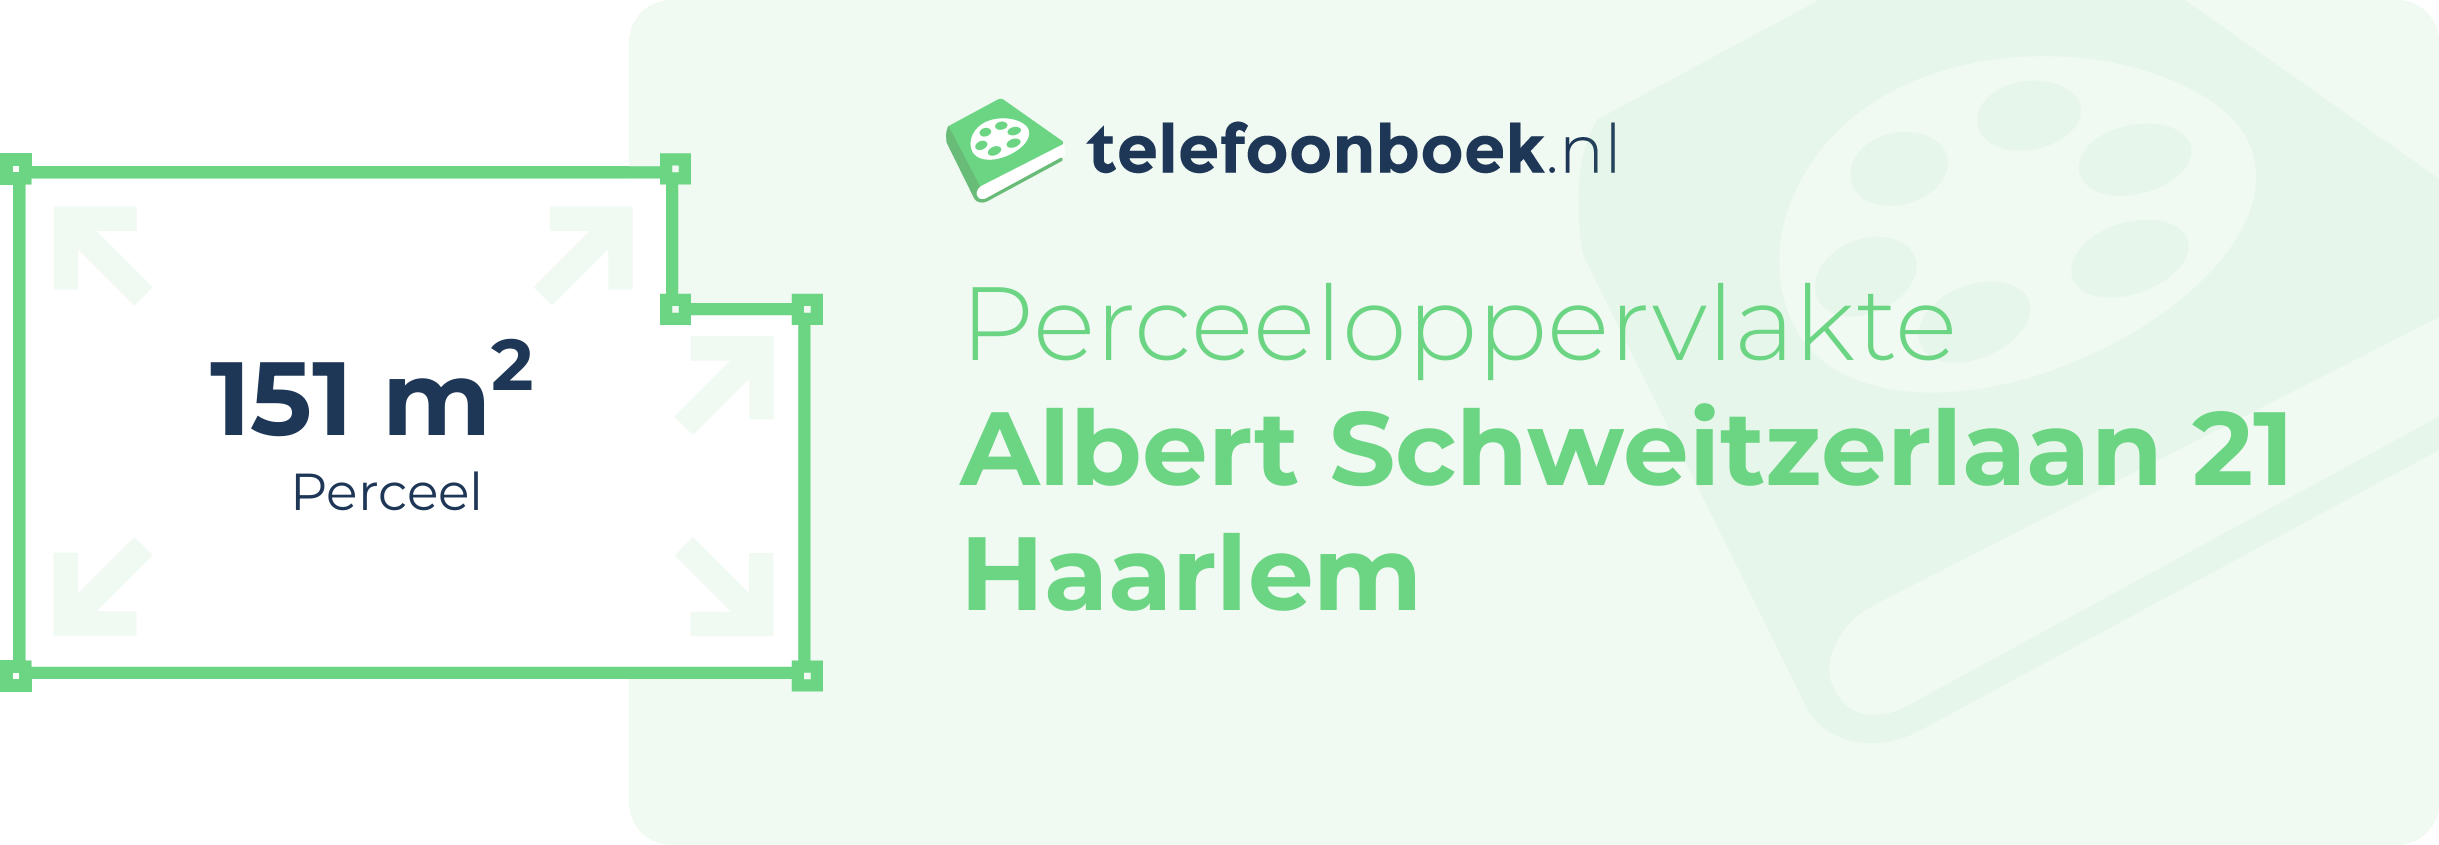 Perceeloppervlakte Albert Schweitzerlaan 21 Haarlem